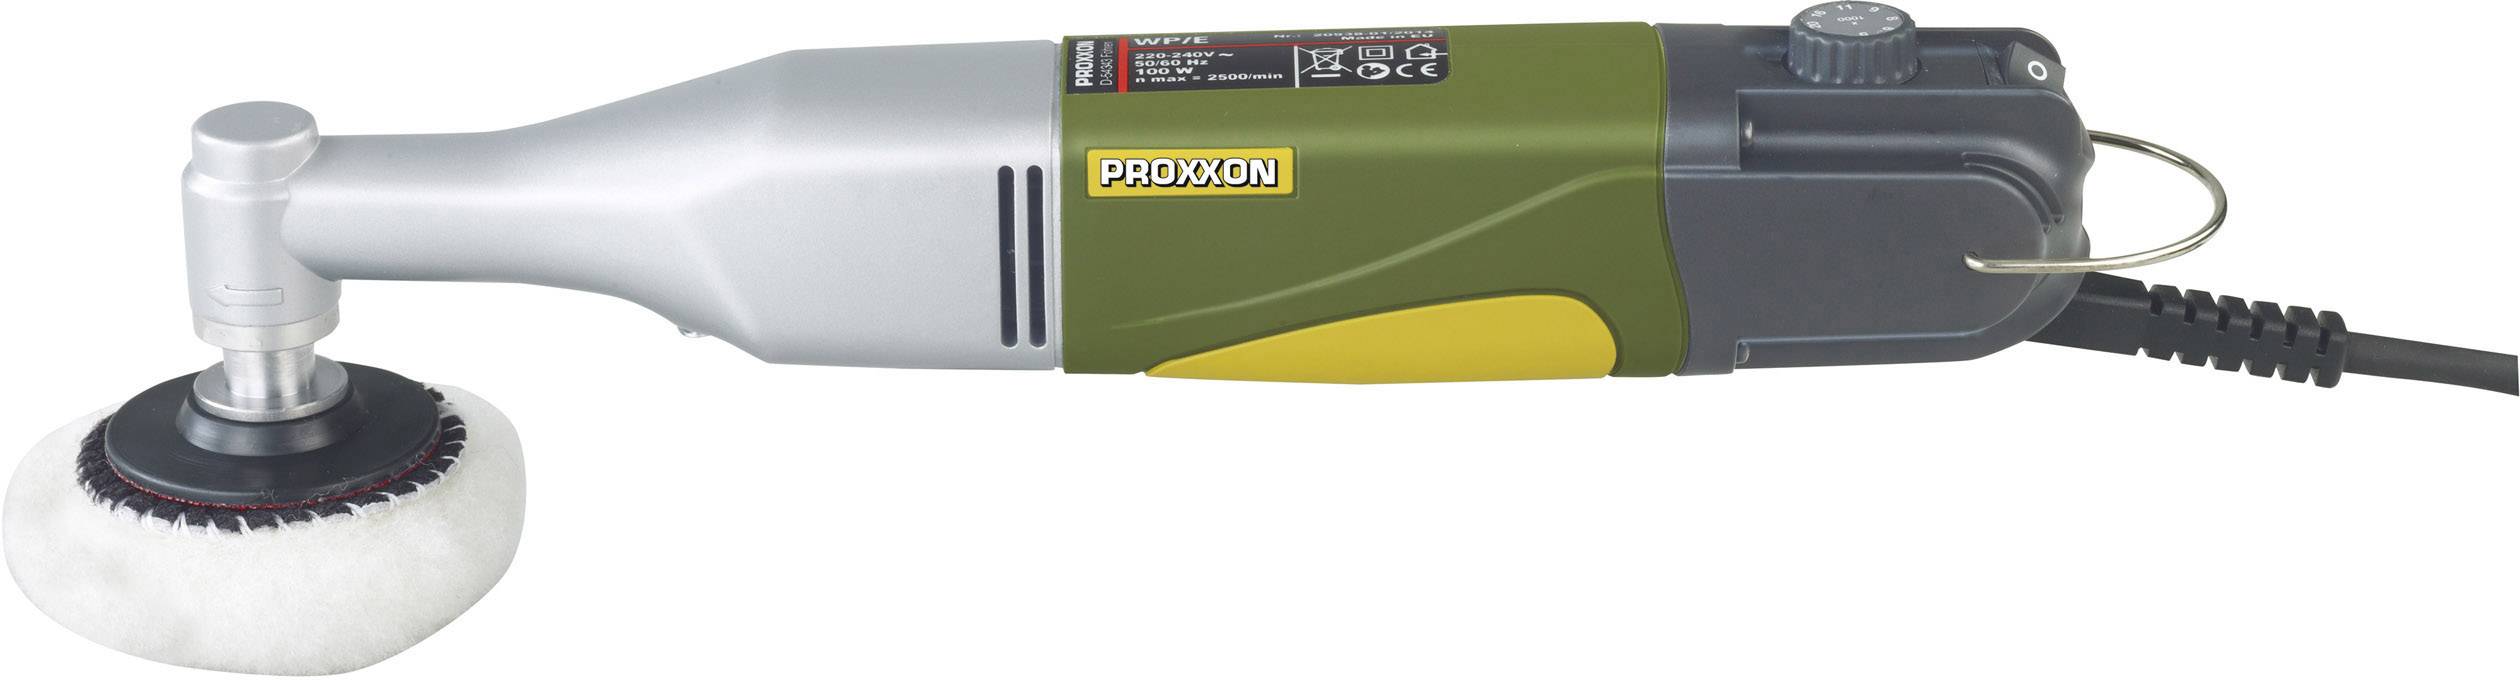 PROXXON Winkelpolierer inkl. Zubehör 18teilig 100 W Proxxon Micromot WP/E